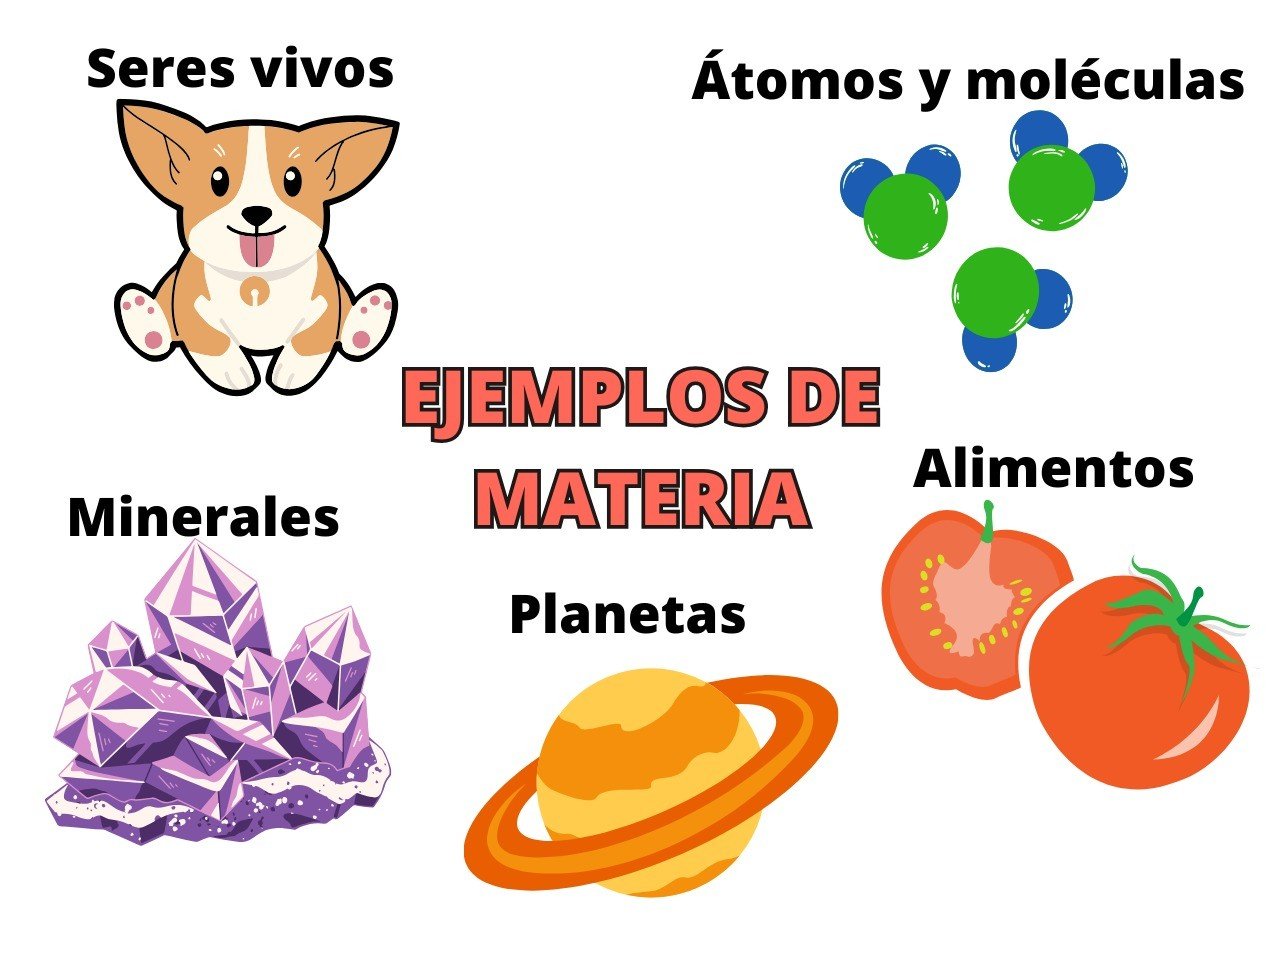 Algunos ejemplos de materia: seres vivos, átomos y moléculas, minerales, planetas y alimentos